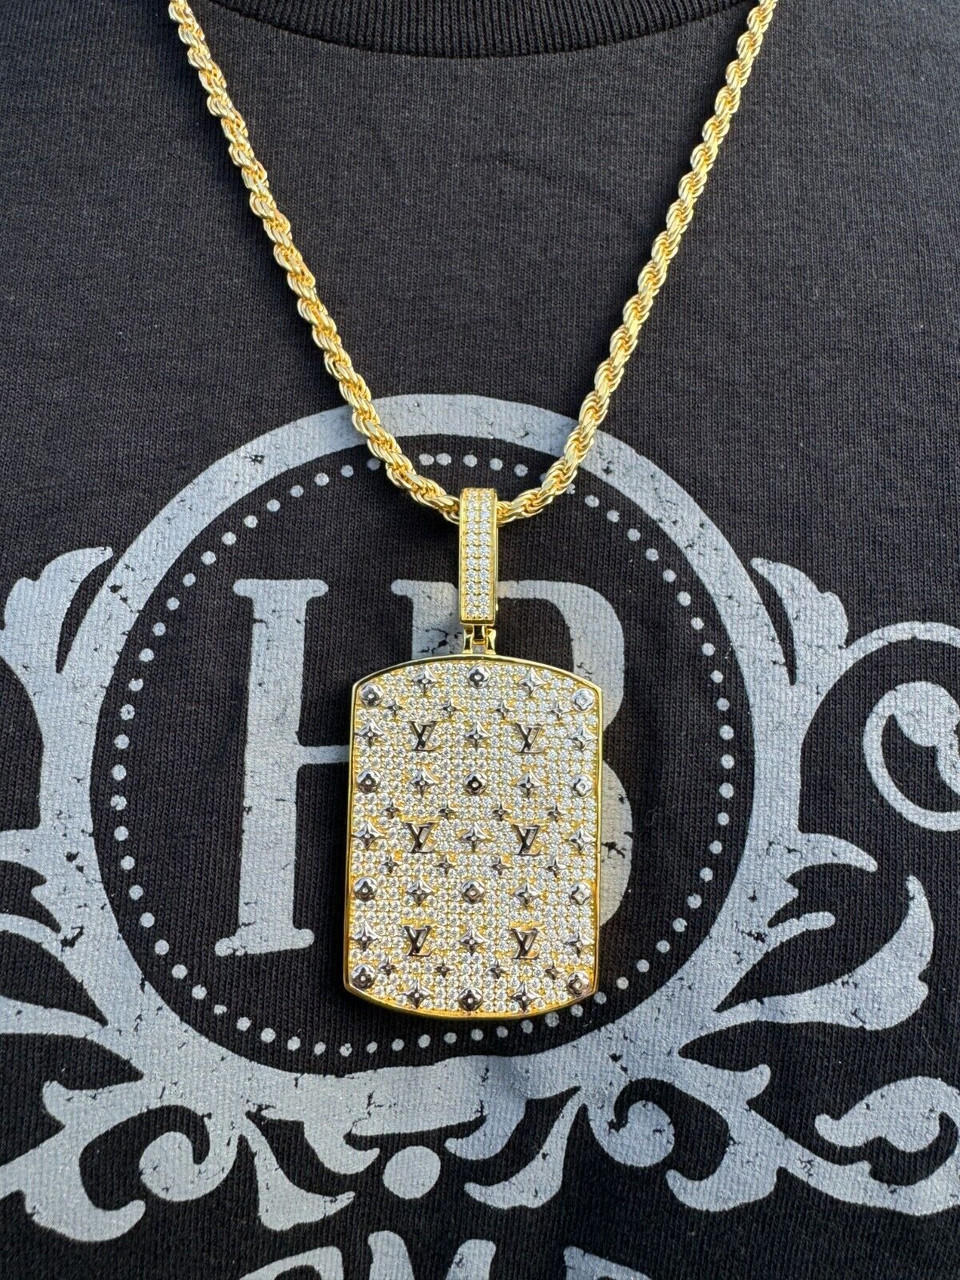 Pre-Owned Louis Vuitton Necklace Nanogram M63141 Metal Women's Pendant  Necklace (Gold,Silver) (Good) - Walmart.com